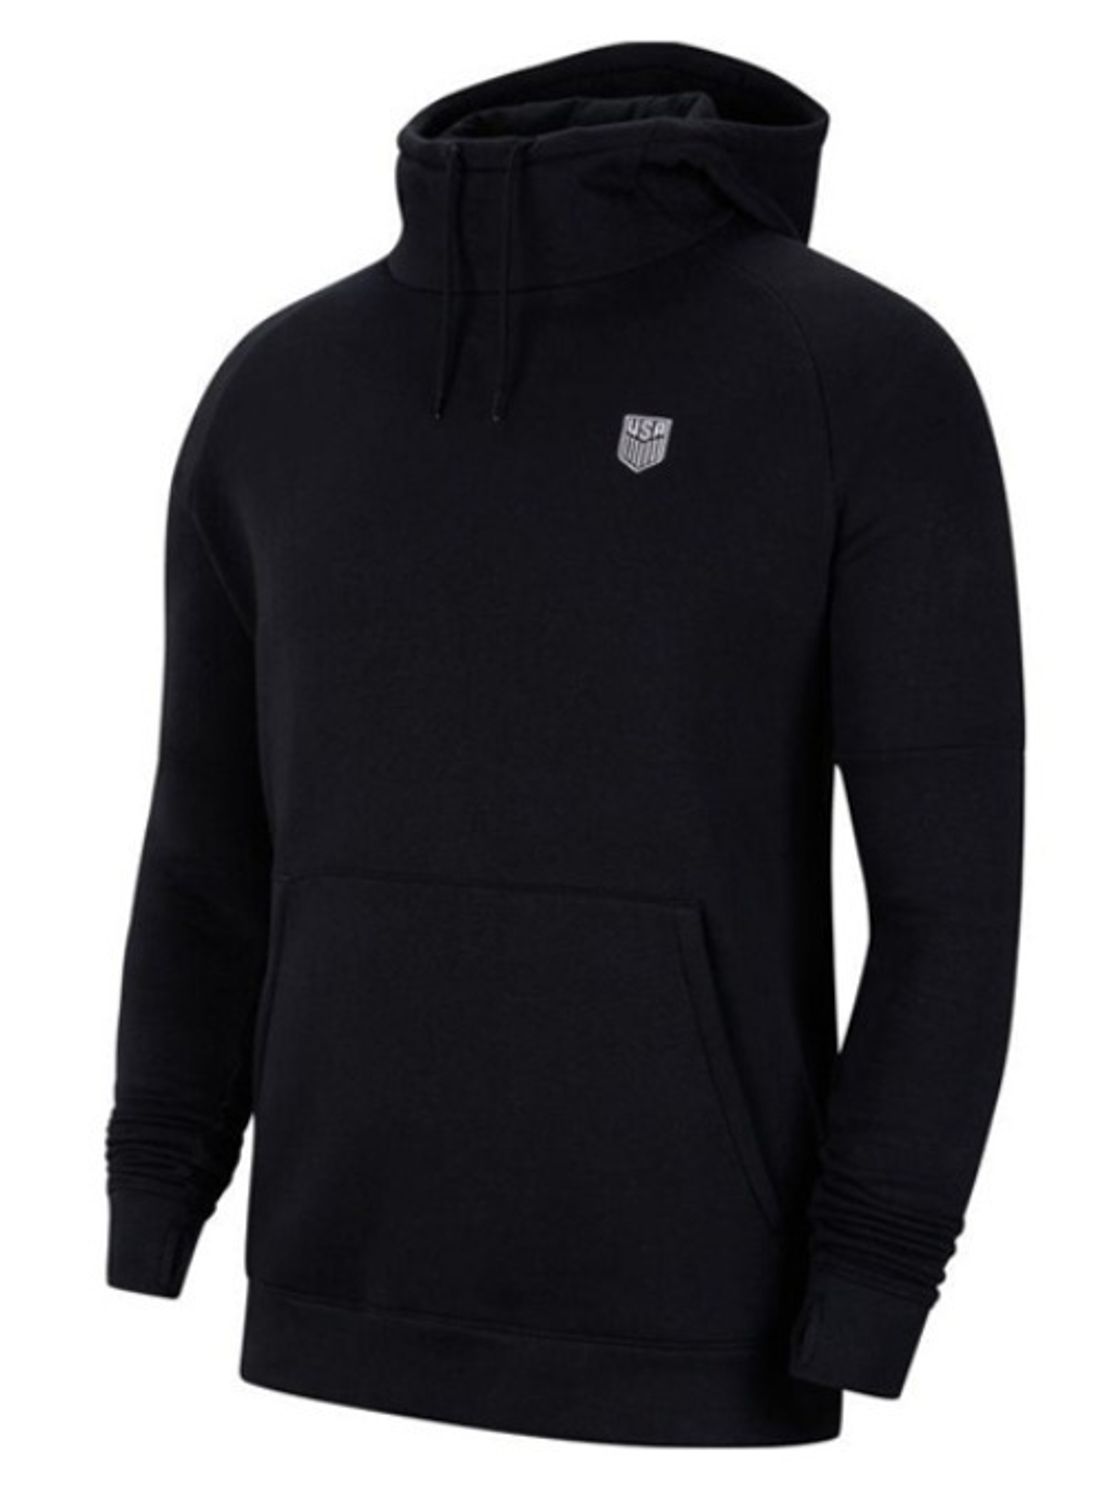 Nike Men's USA Fleece Pullover Hoody - Black/White / S